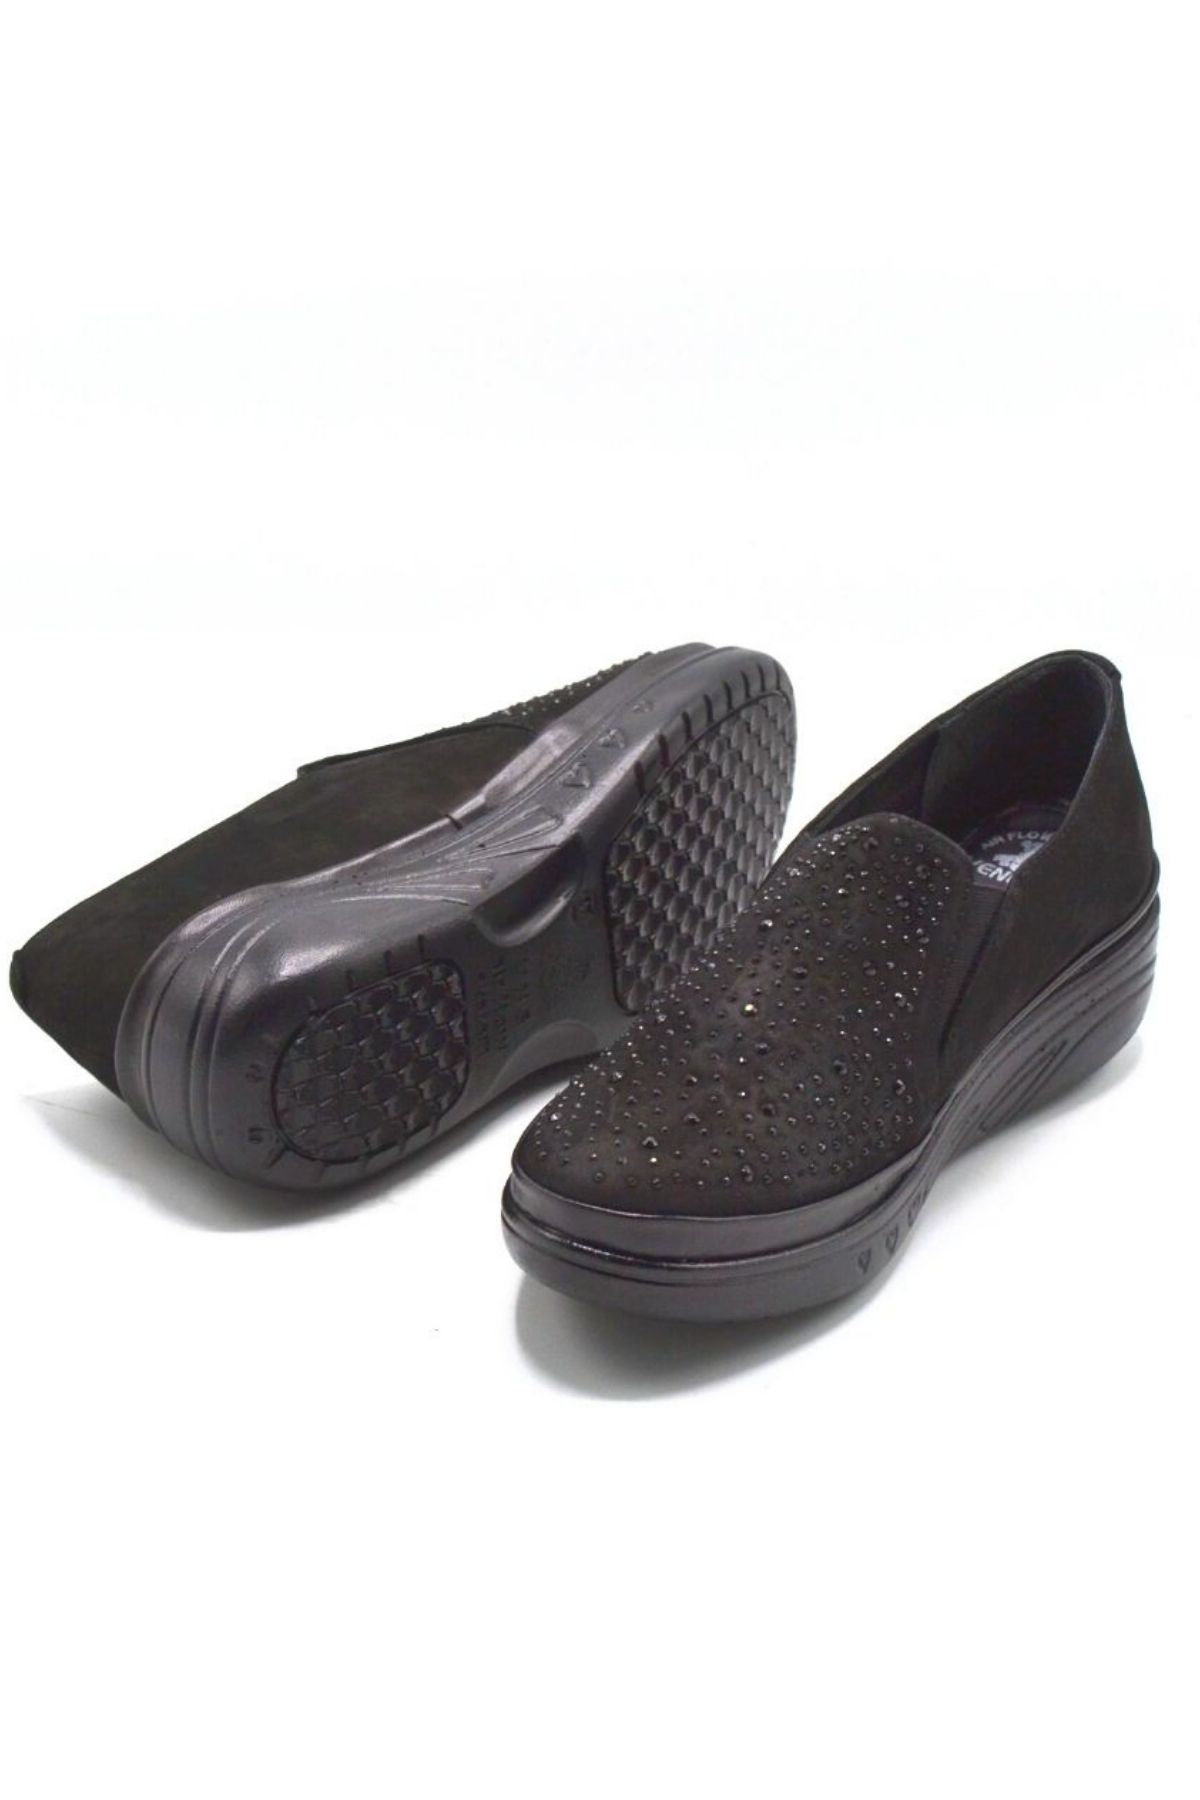 Kadın Airflow Deri Ayakkabı Siyah 1820504K